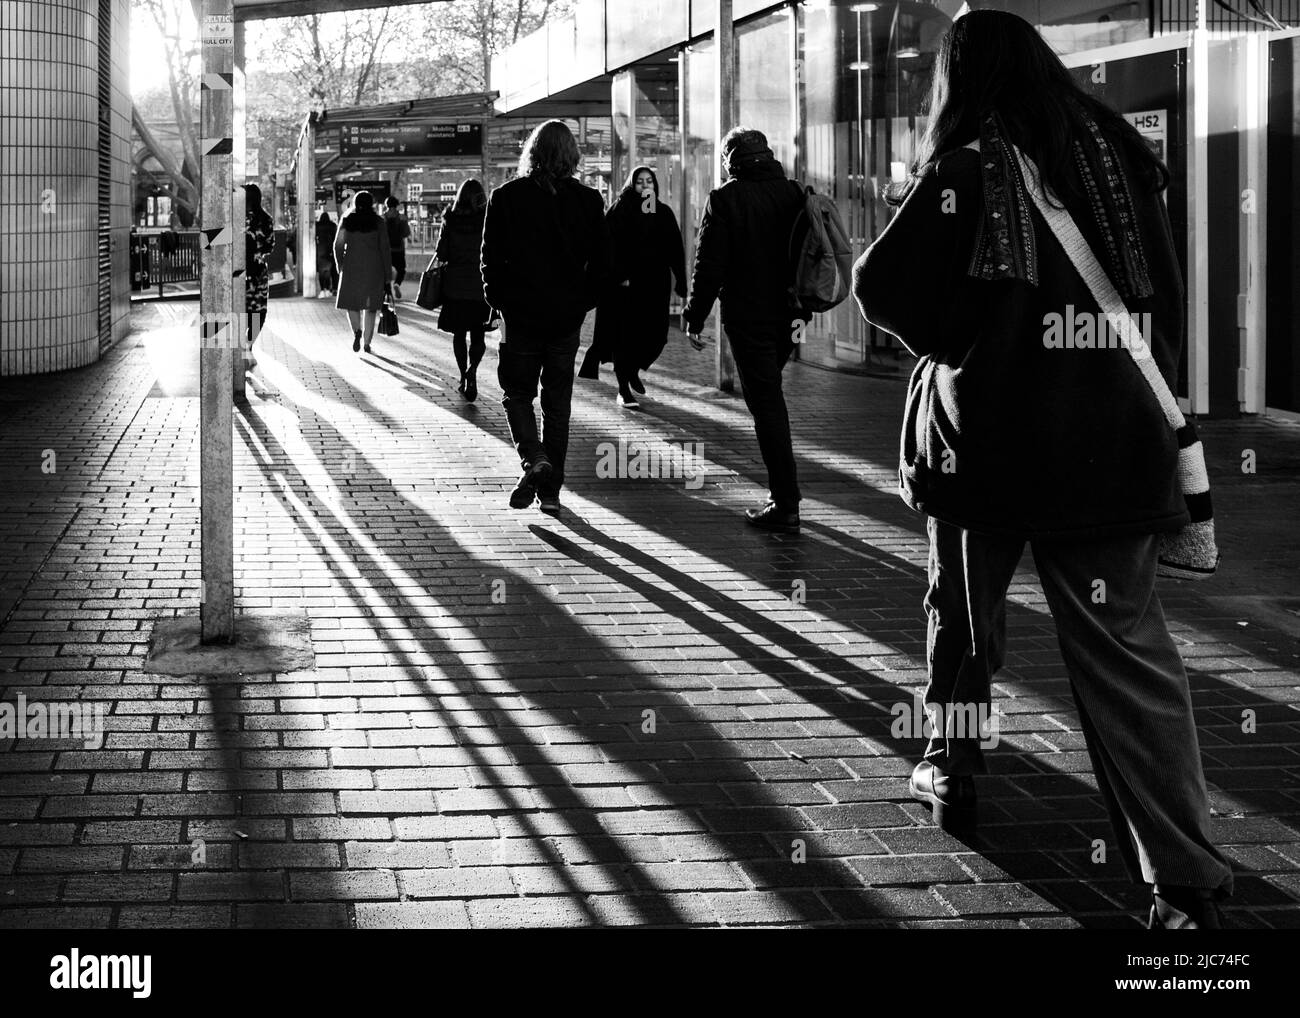 Le soleil du matin projette de longues ombres sur les navetteurs lorsqu'ils sortent de la gare d'Euston, Londres, pendant l'heure de pointe du matin. Banque D'Images